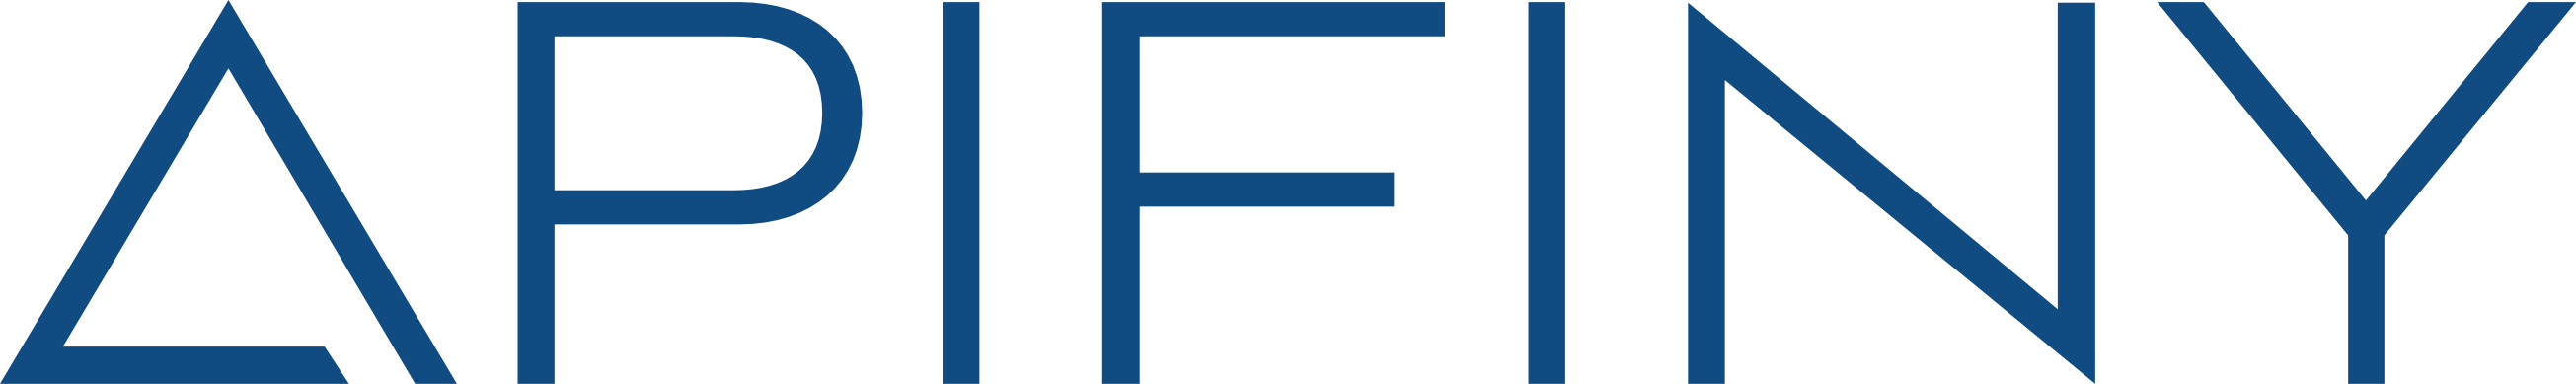 APIFINY-Logo.png